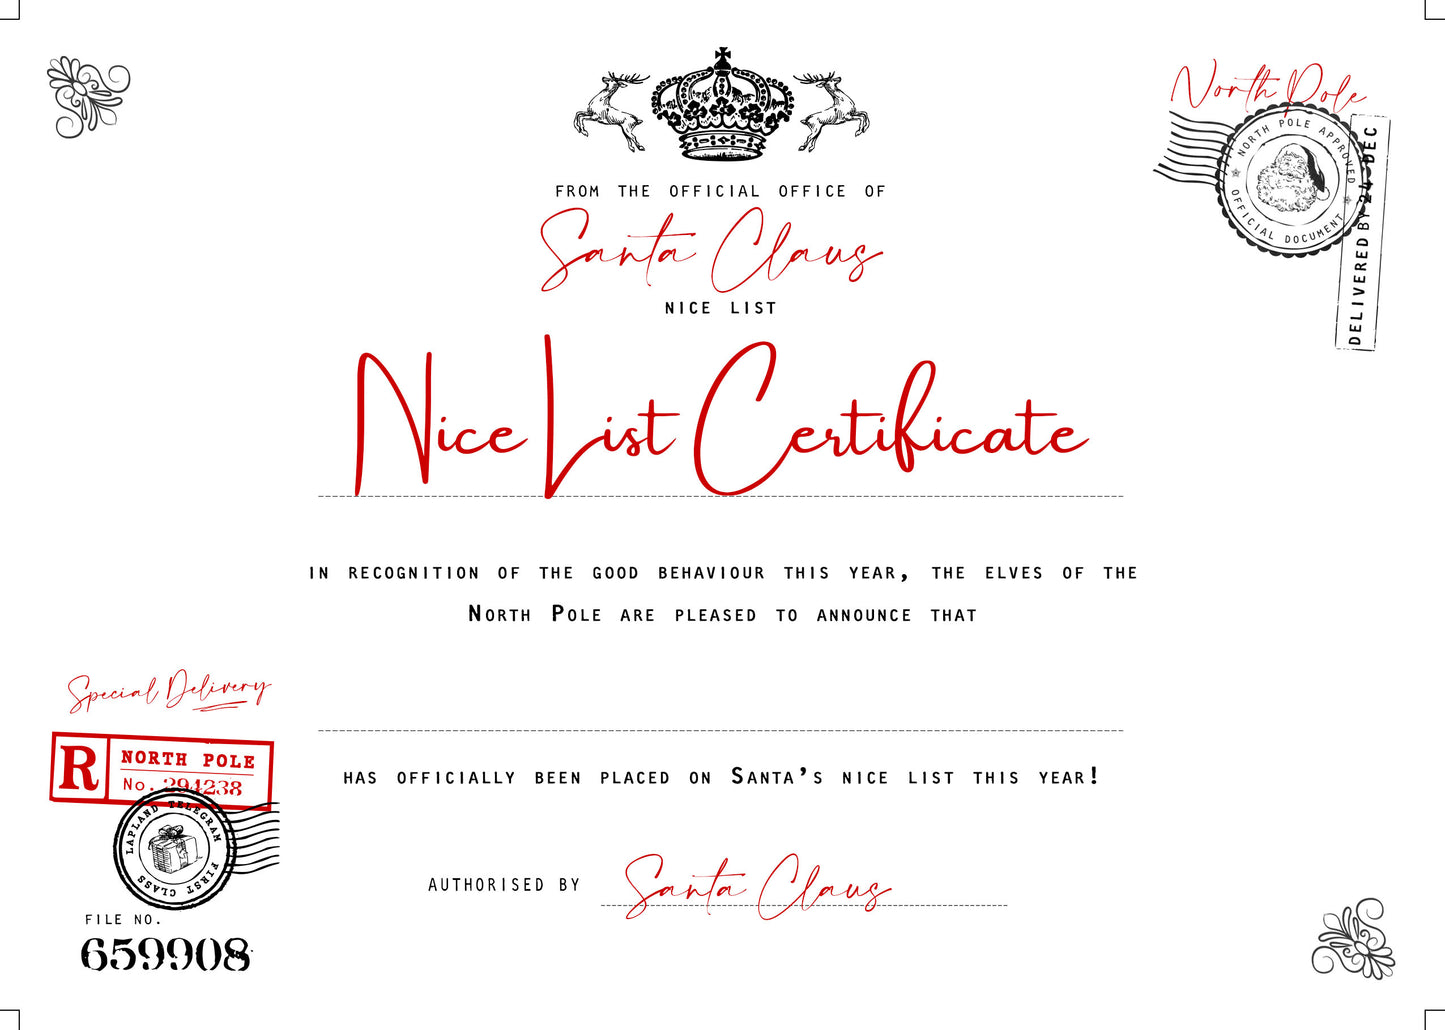 Santa Claus Telegram & Certificate